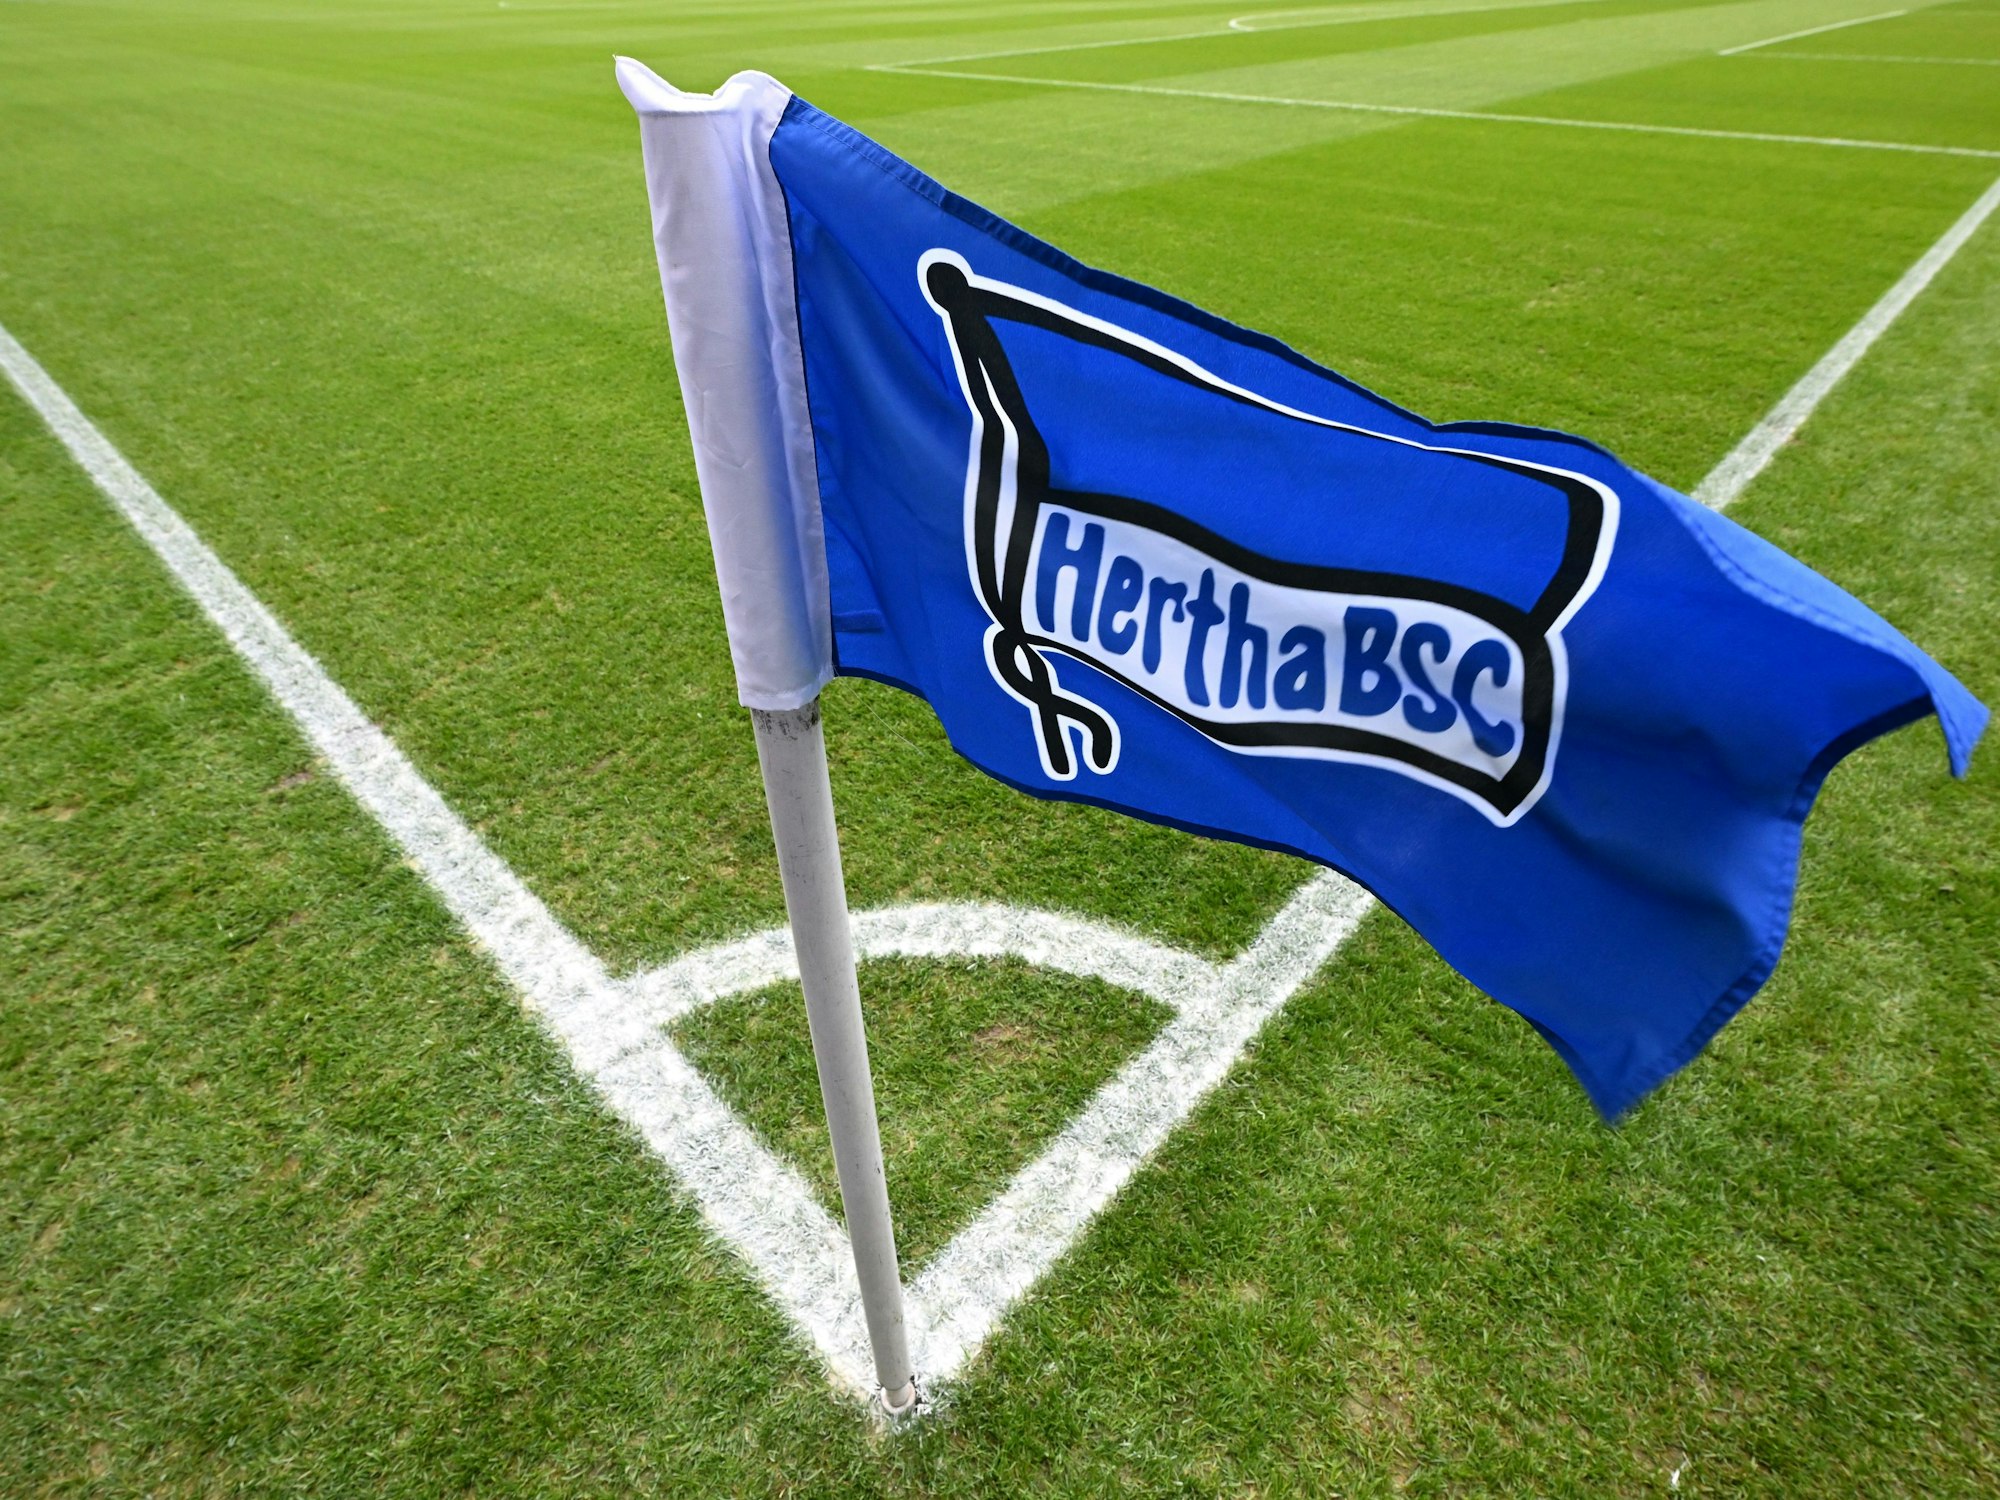 Eckfahne mit dem Hertha-Logo weht vor dem Spiel im Wind.